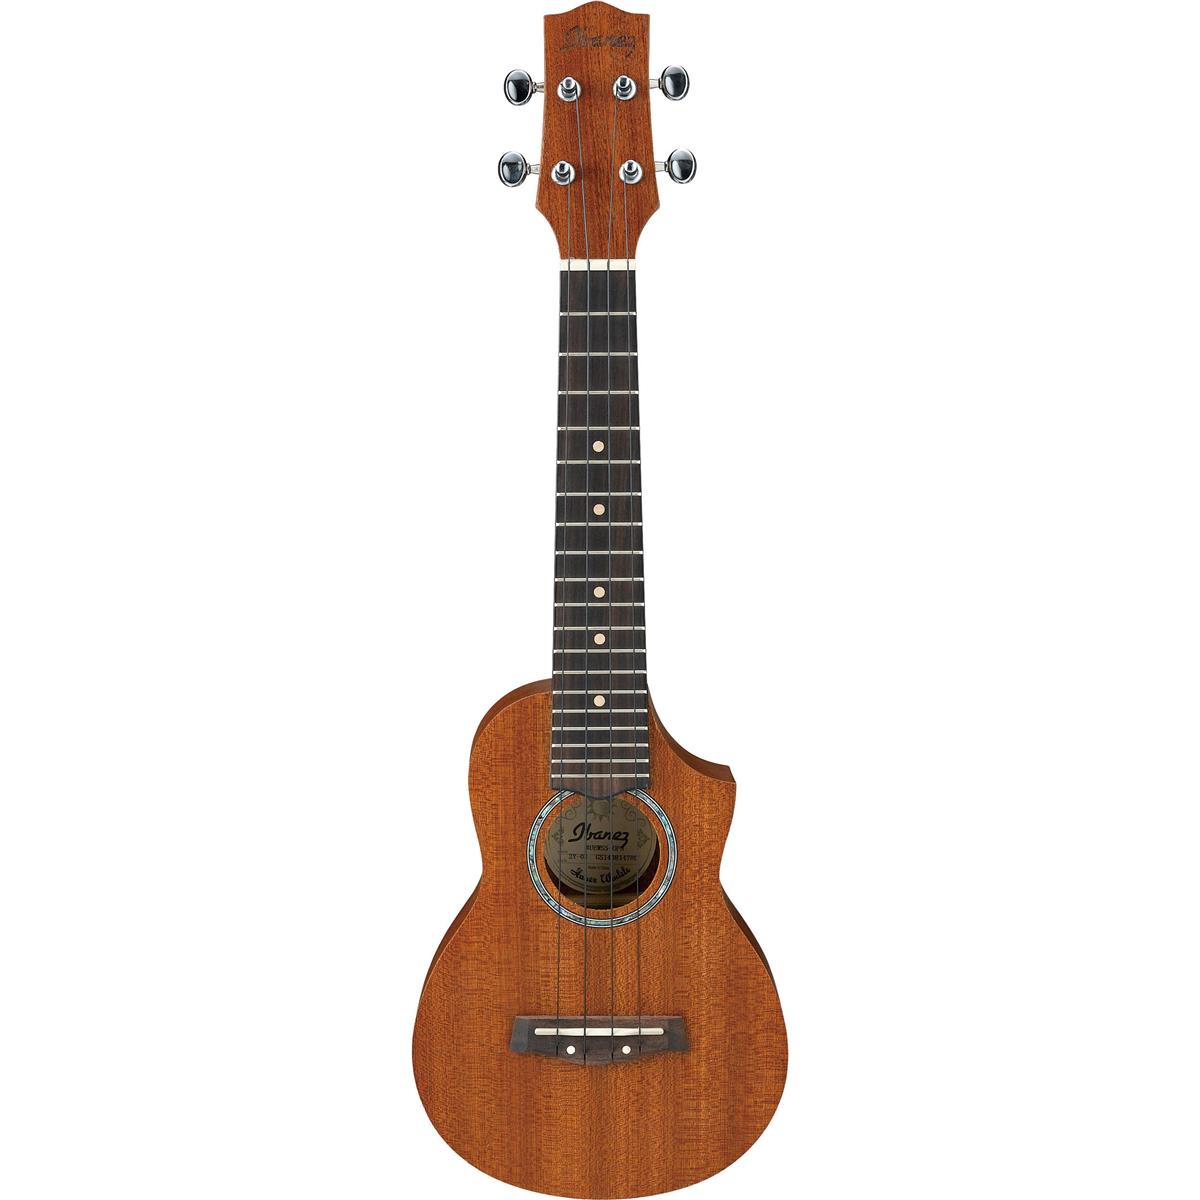 Image of Ibanez UEWS5 Soprano Ukulele Acoustic Guitar